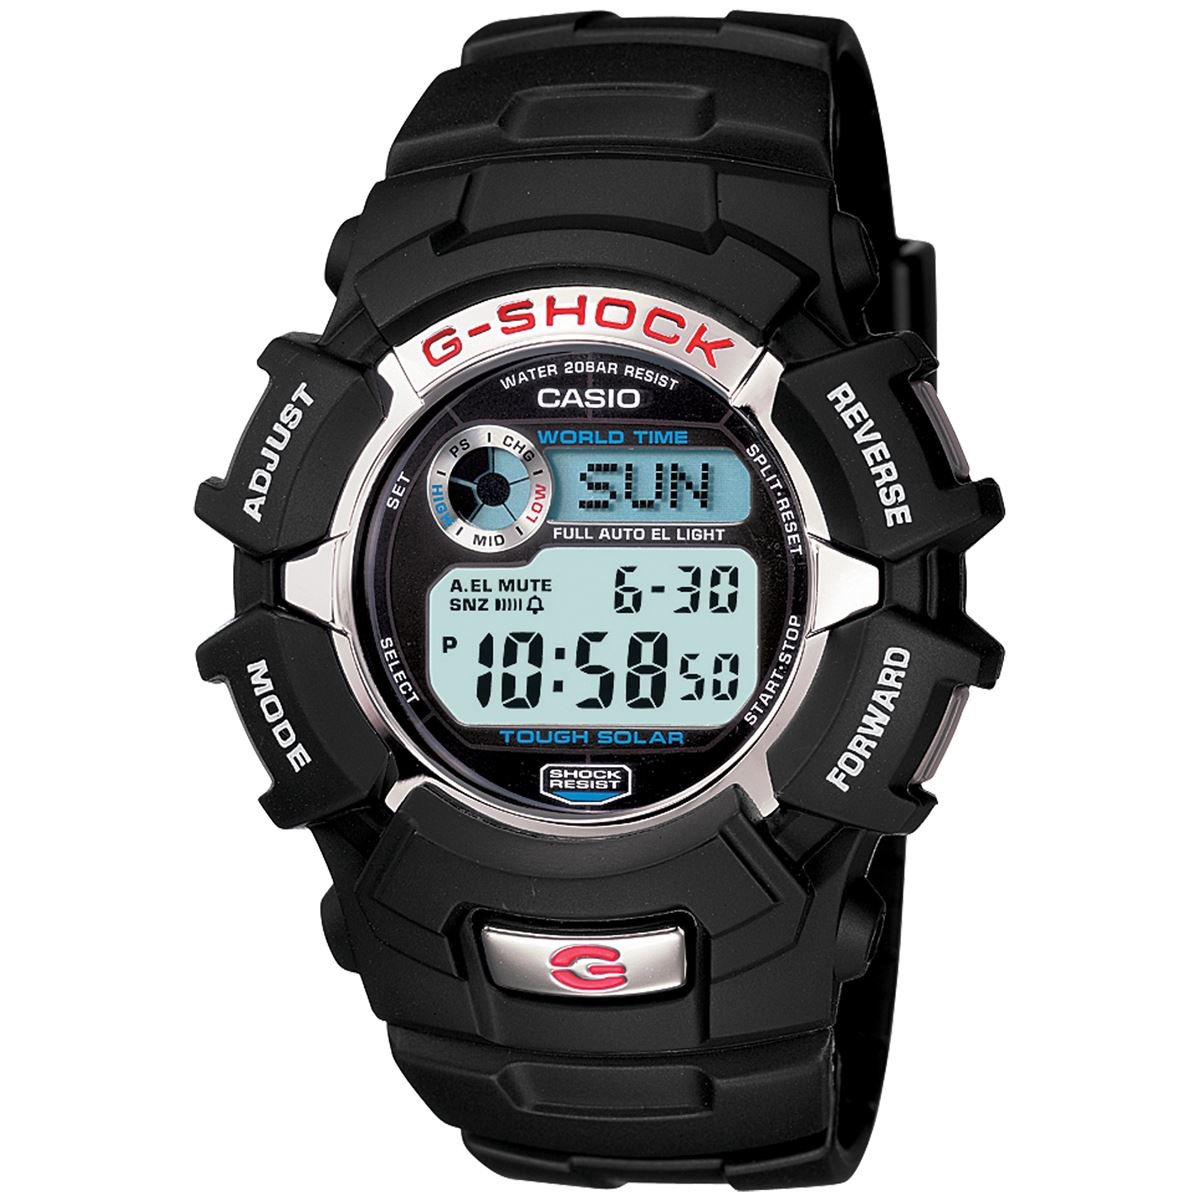 Reloj G-Shock G-2310-CR Para Caballero